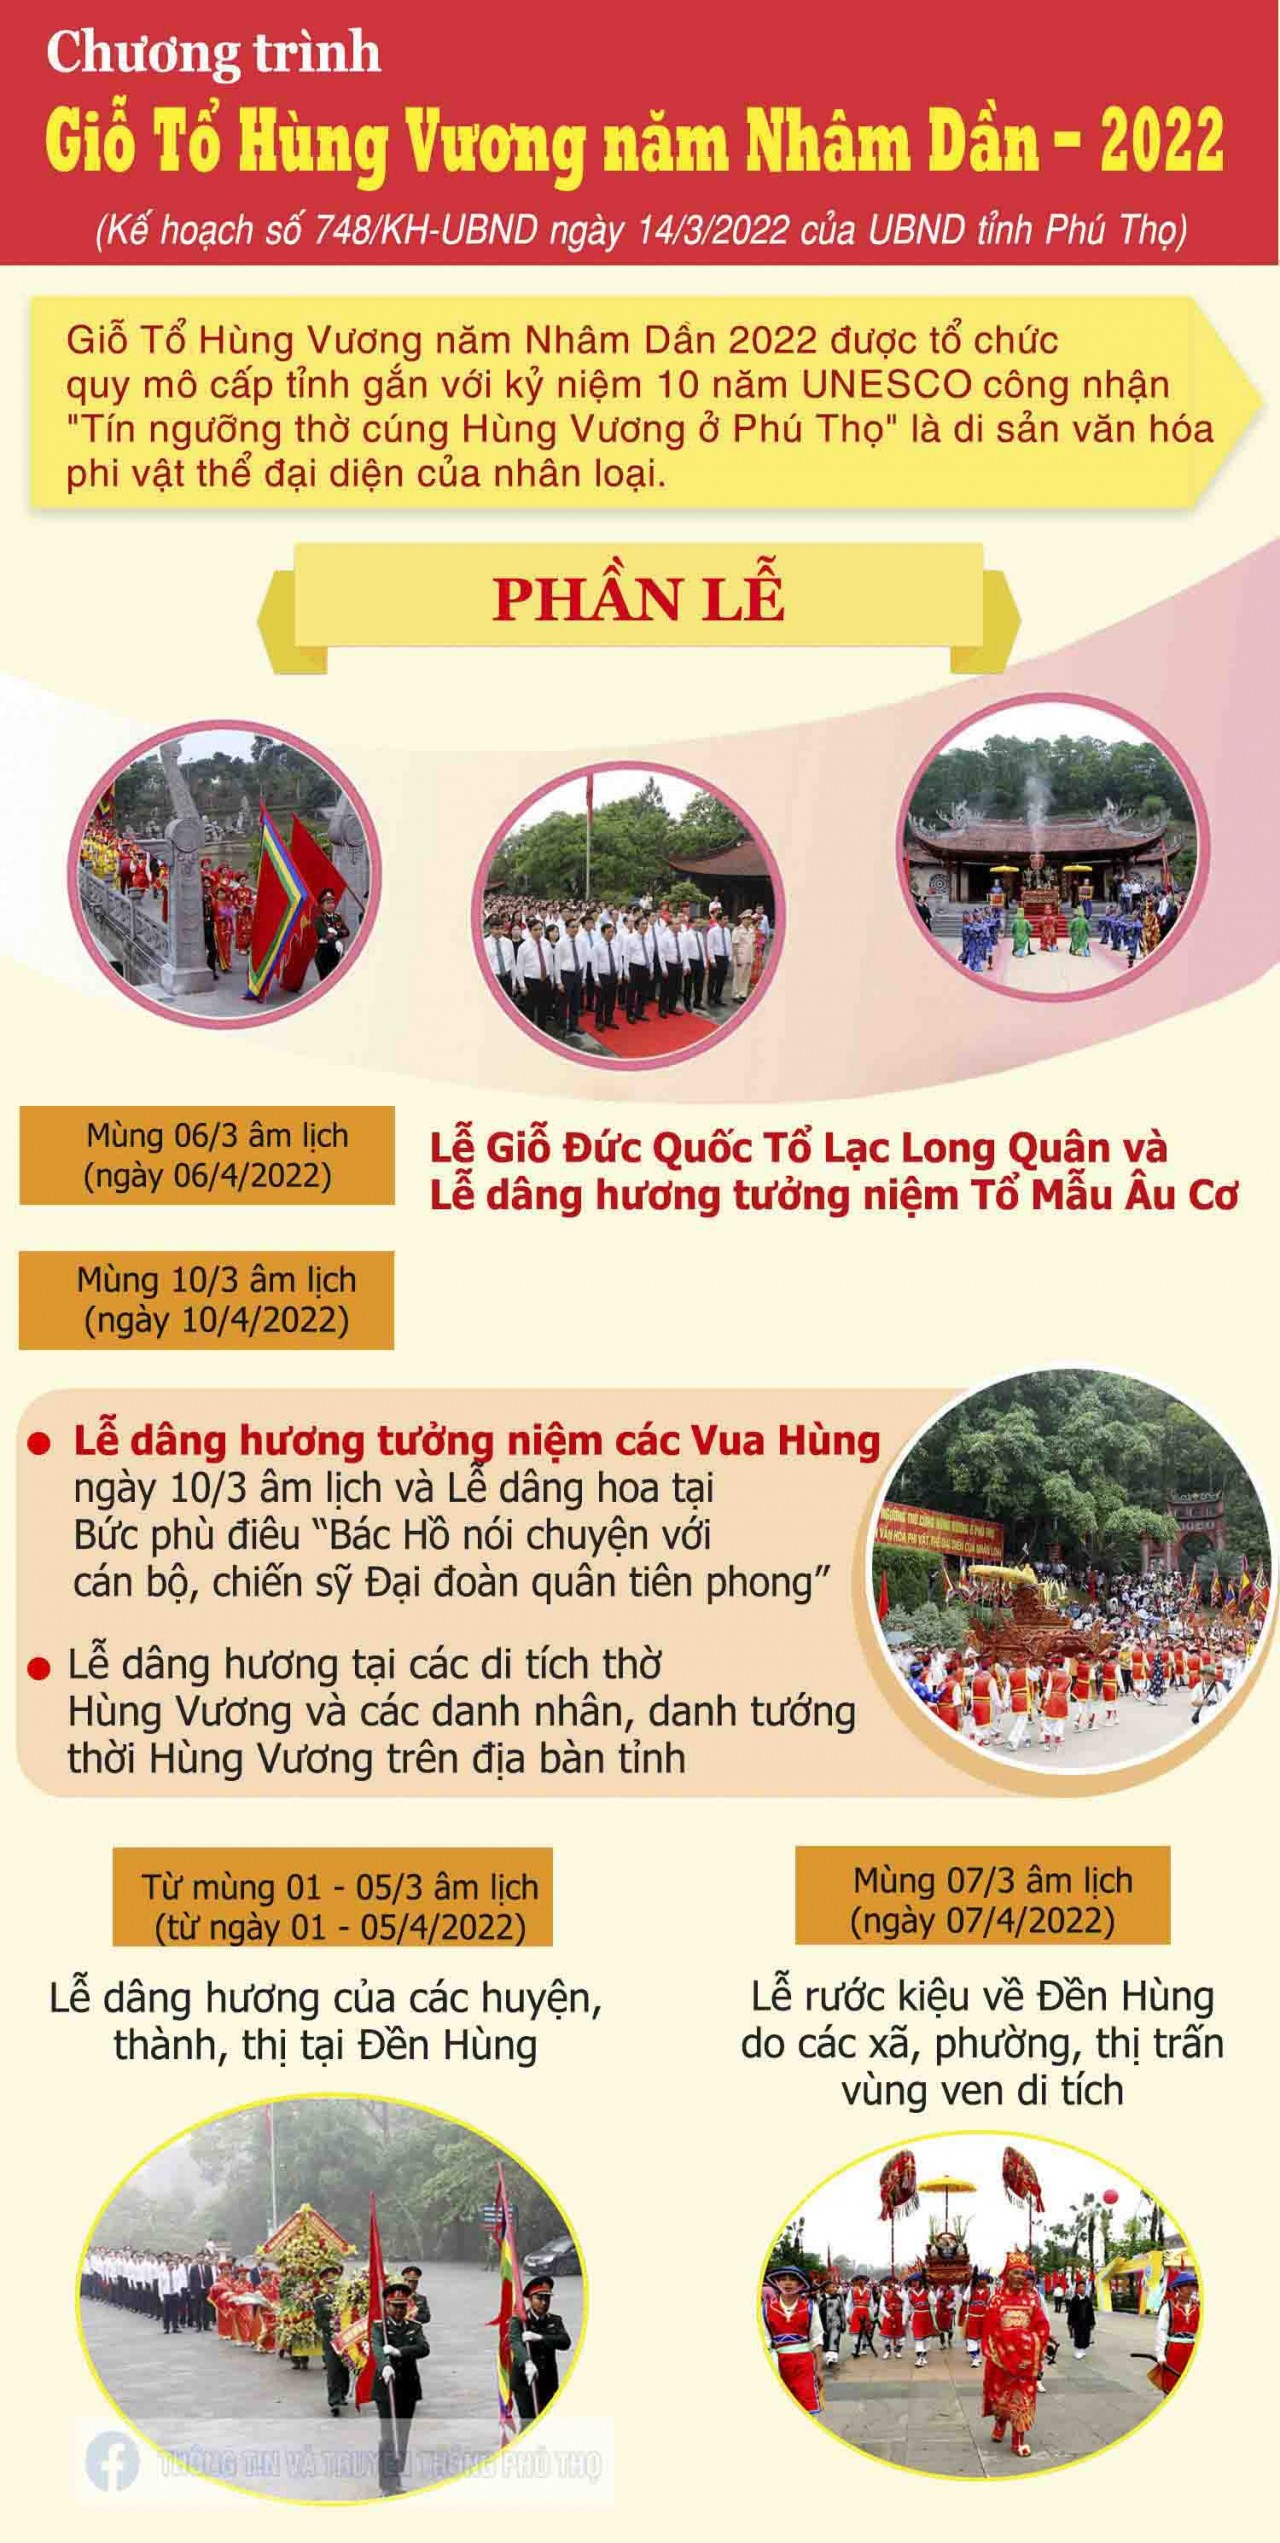 Những điều nên biết về Lễ hội Giỗ tổ Hùng Vương năm 2022